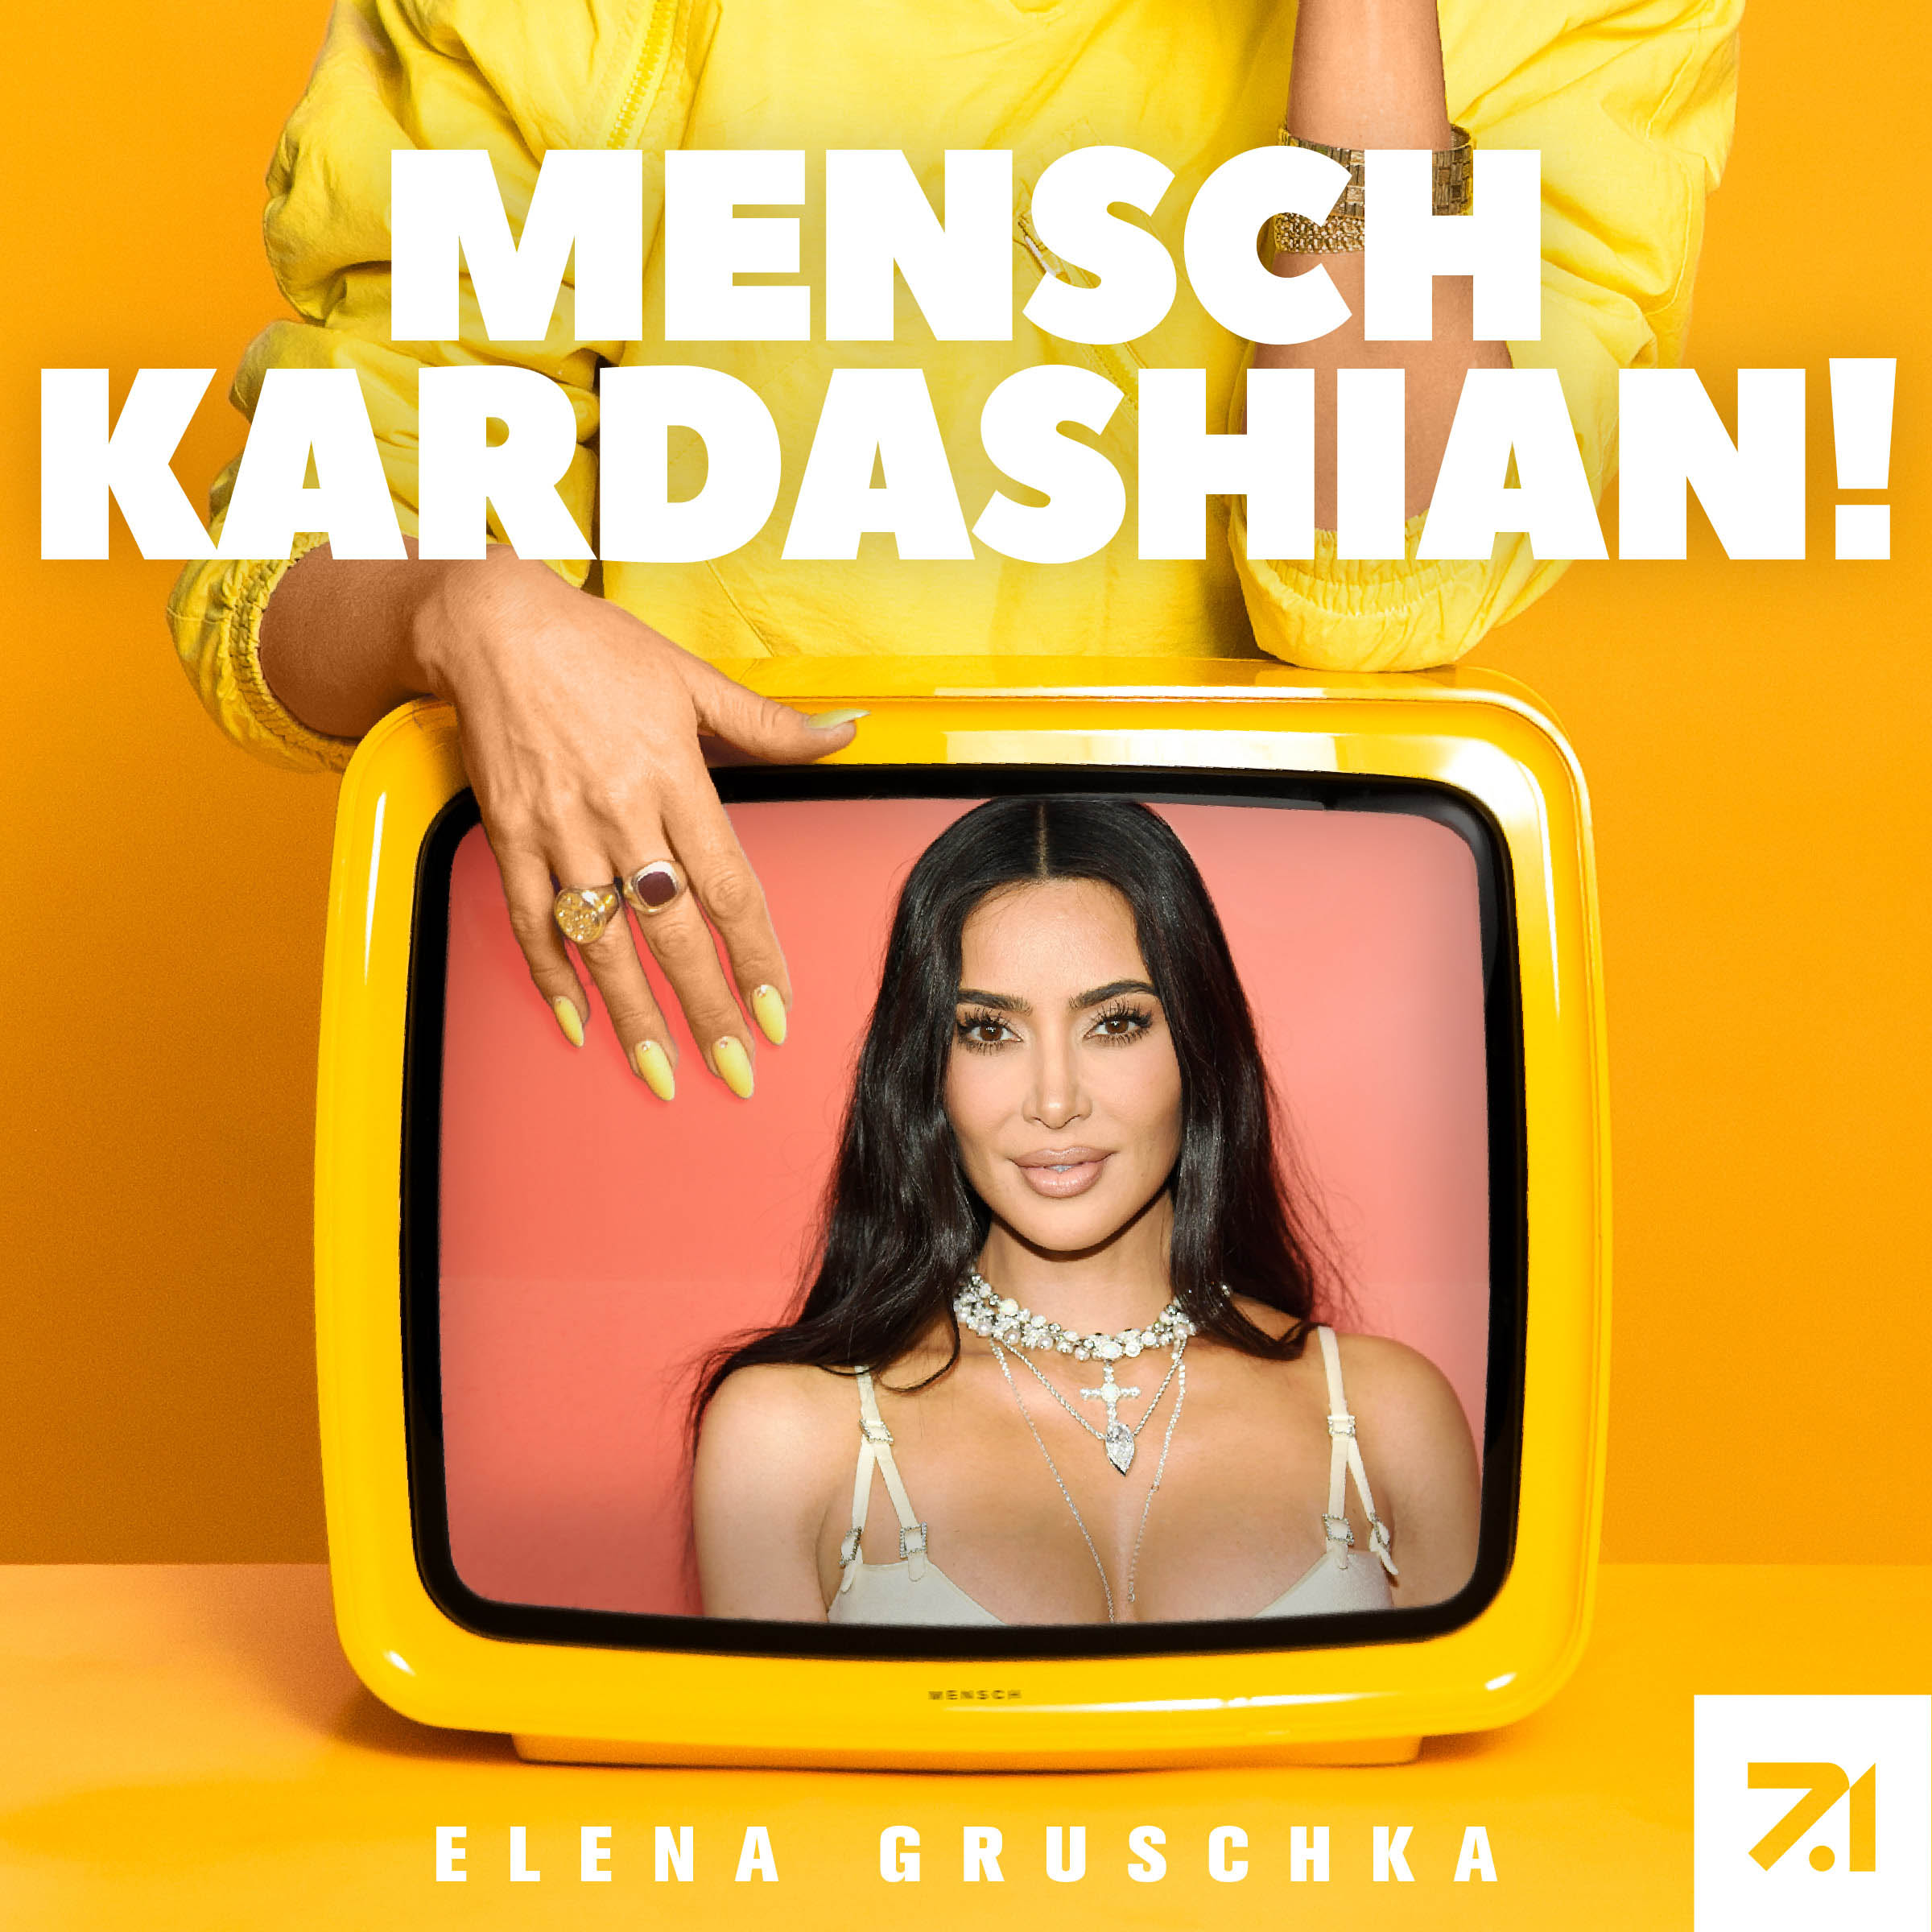 2|4 Mensch Kardashian! - Kim - Ein Playboy Shooting, die 72-Tage-Ehe und andere Desaster!